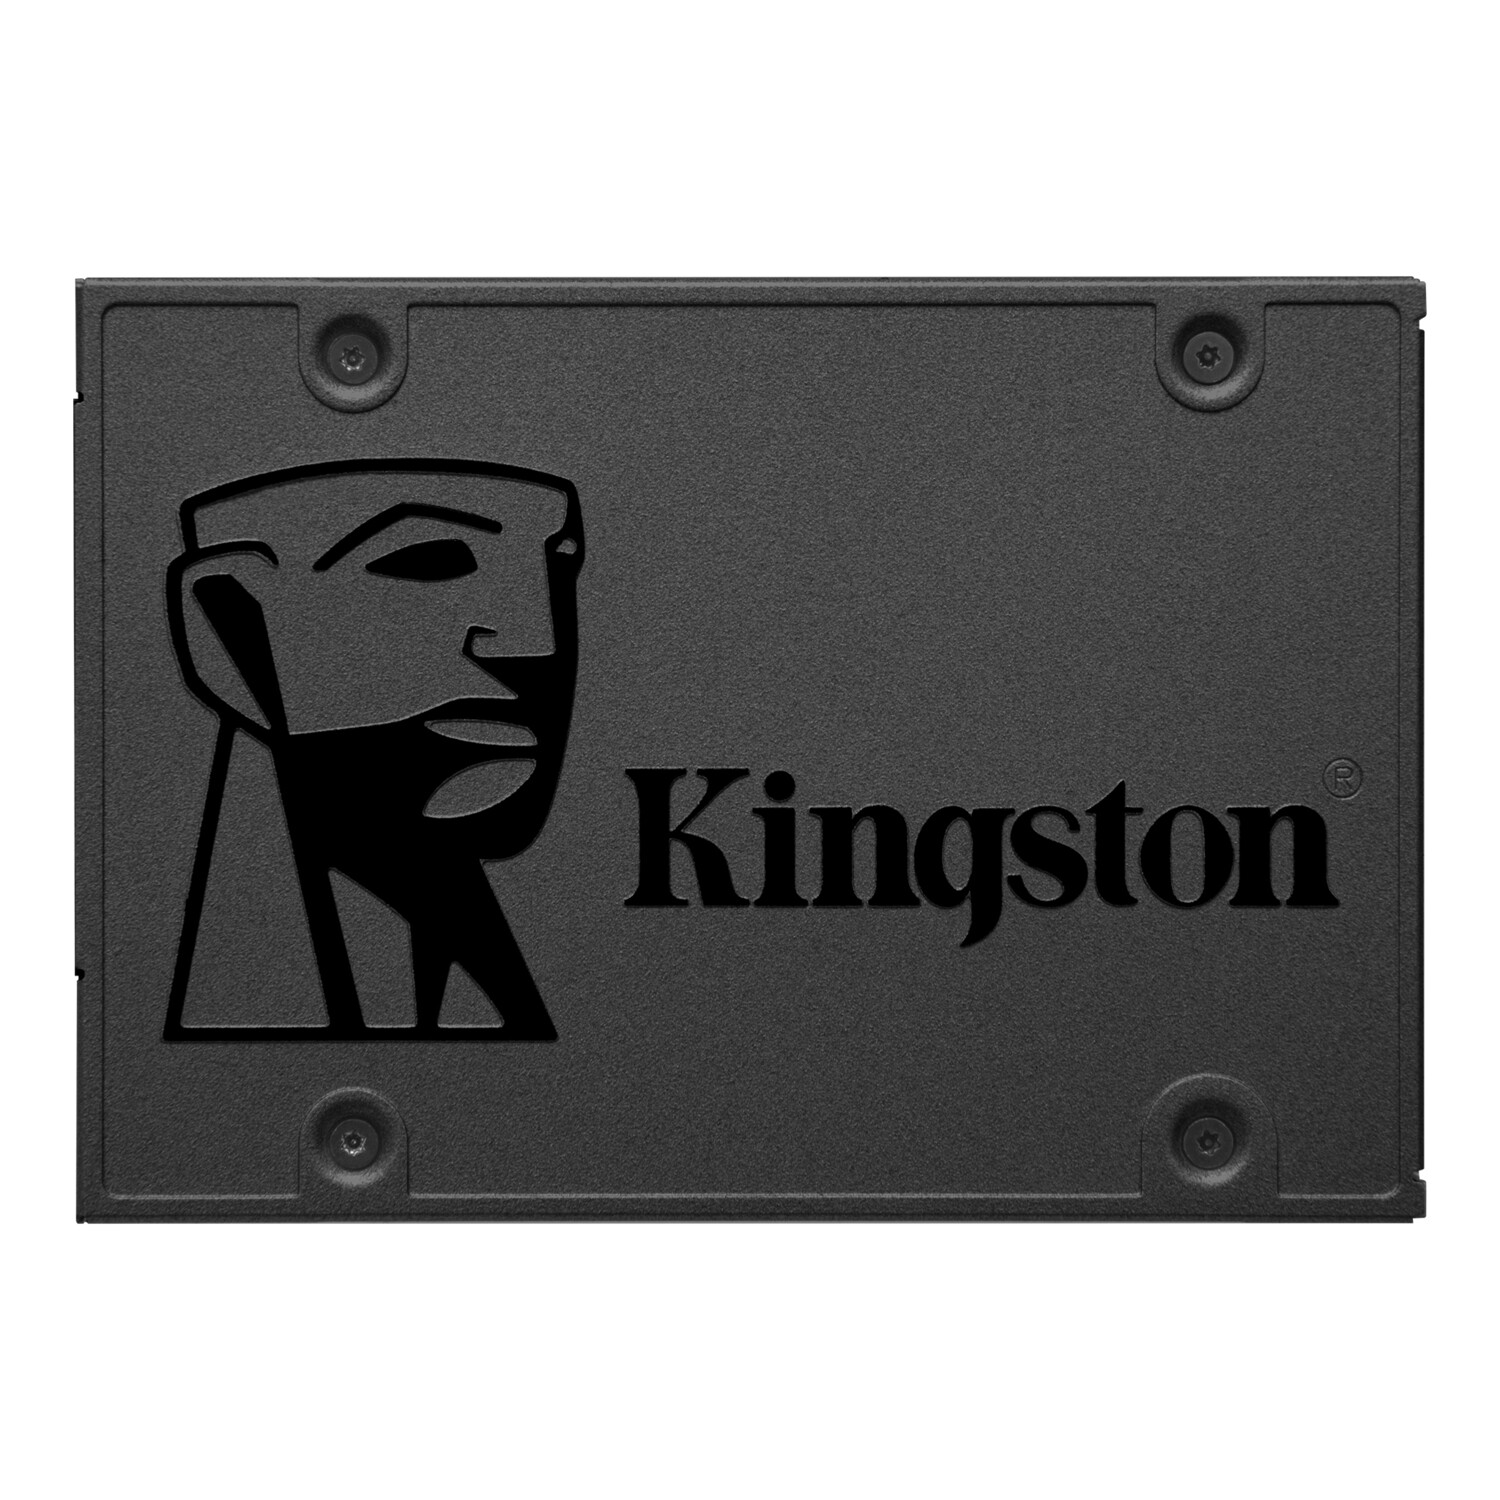 KINGSTON A400 240GB DISCO DE ESTADO SOLIDO